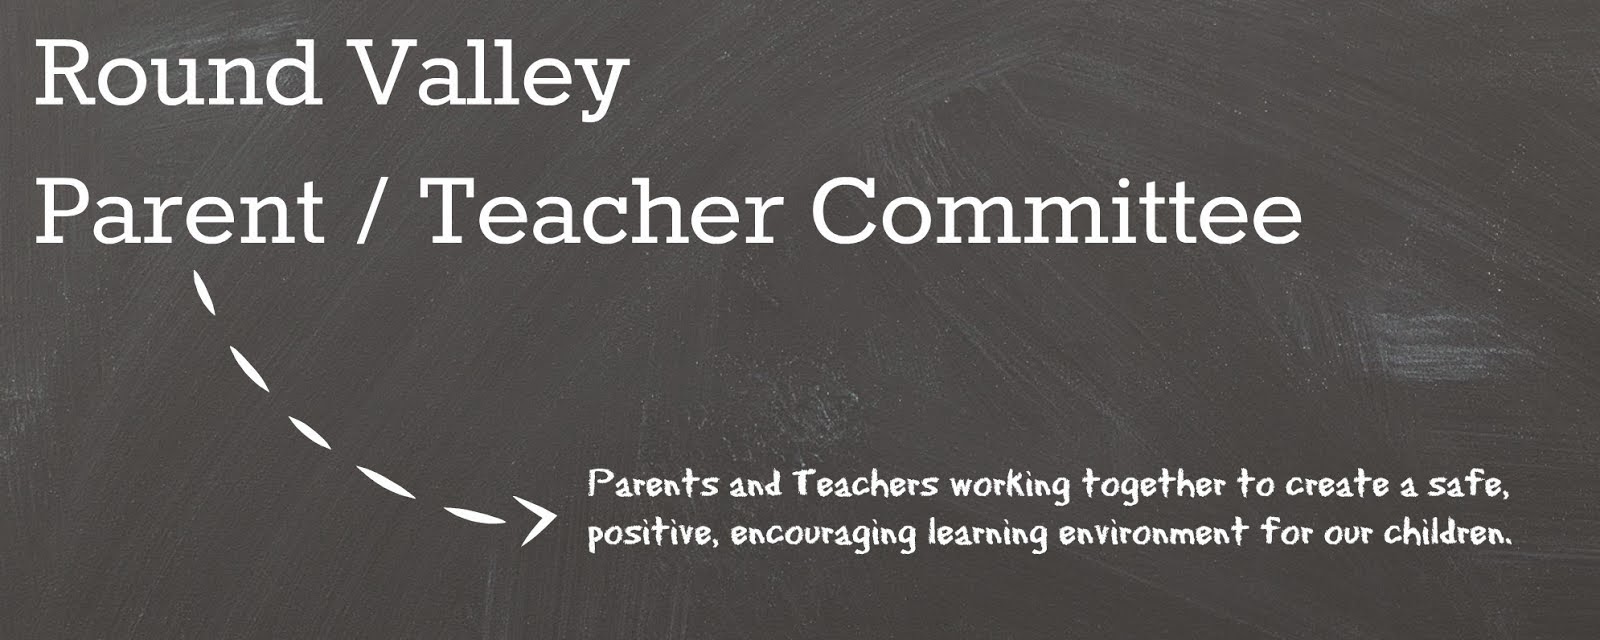 Round Valley Parent Teacher Committee